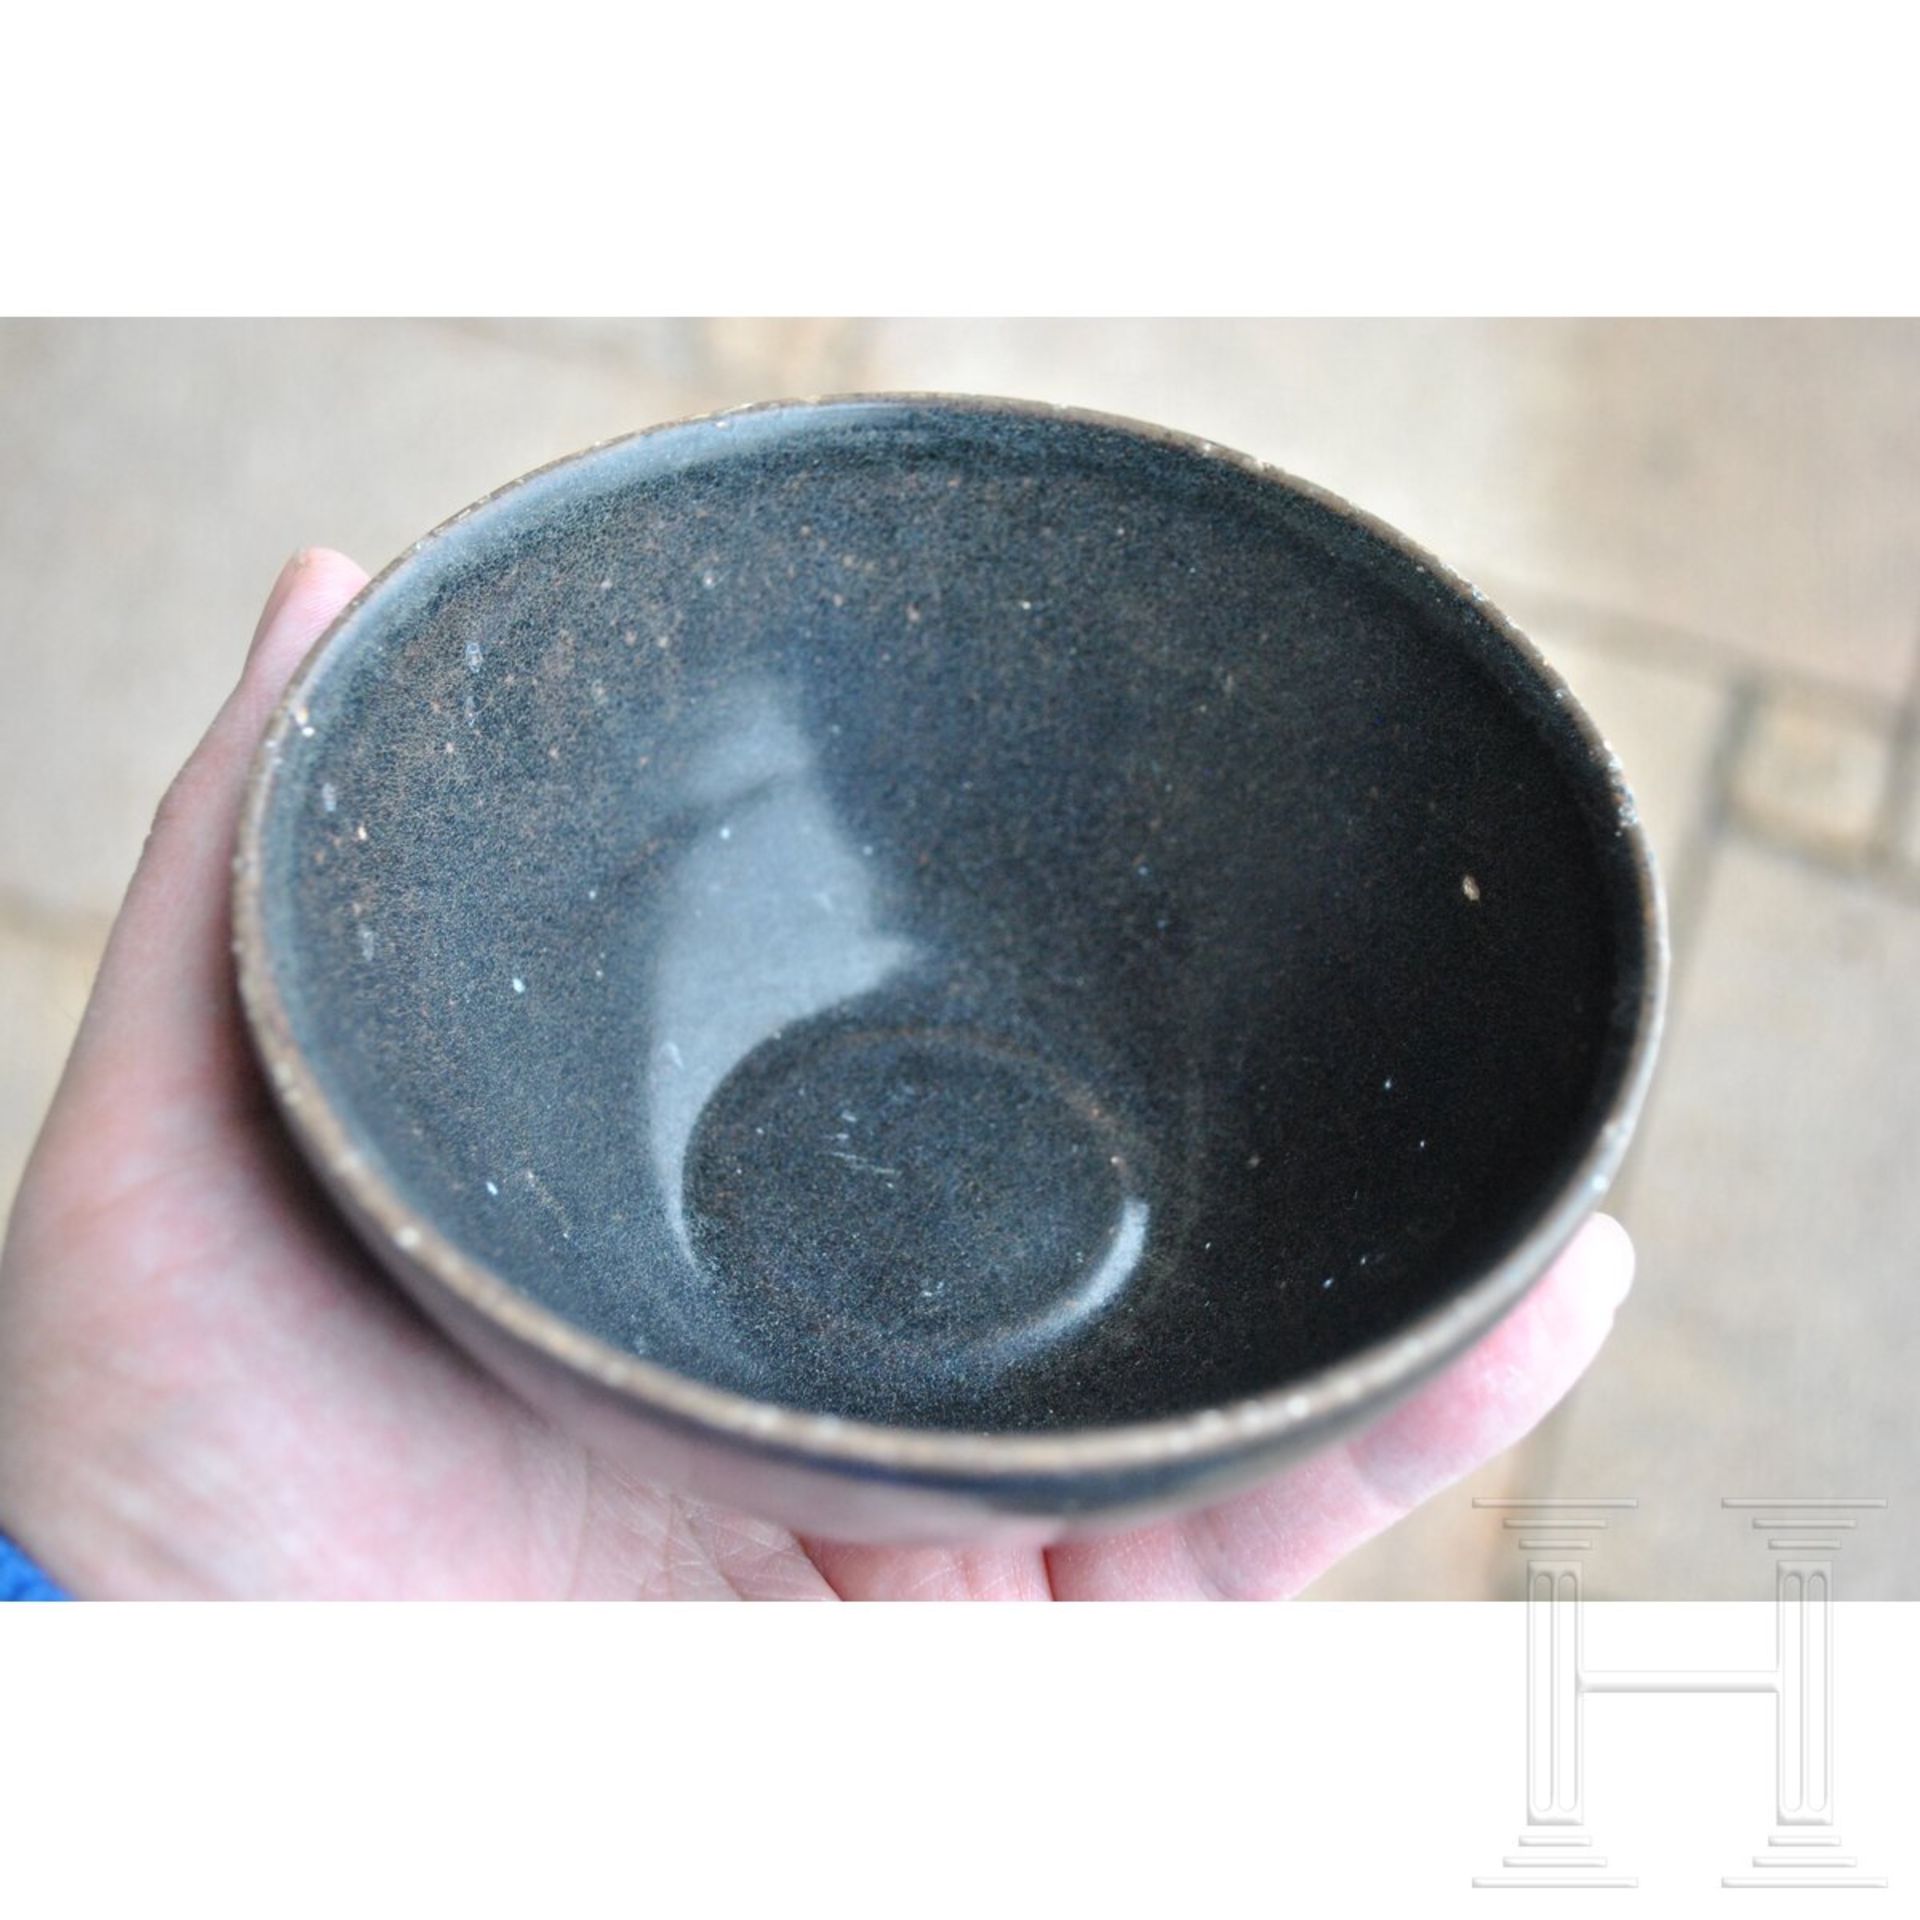 Jizhou-Teeschale, schwarz glasiert, wohl südliche Song-Dynastie (12. - 13. Jhdt.) - Bild 8 aus 17